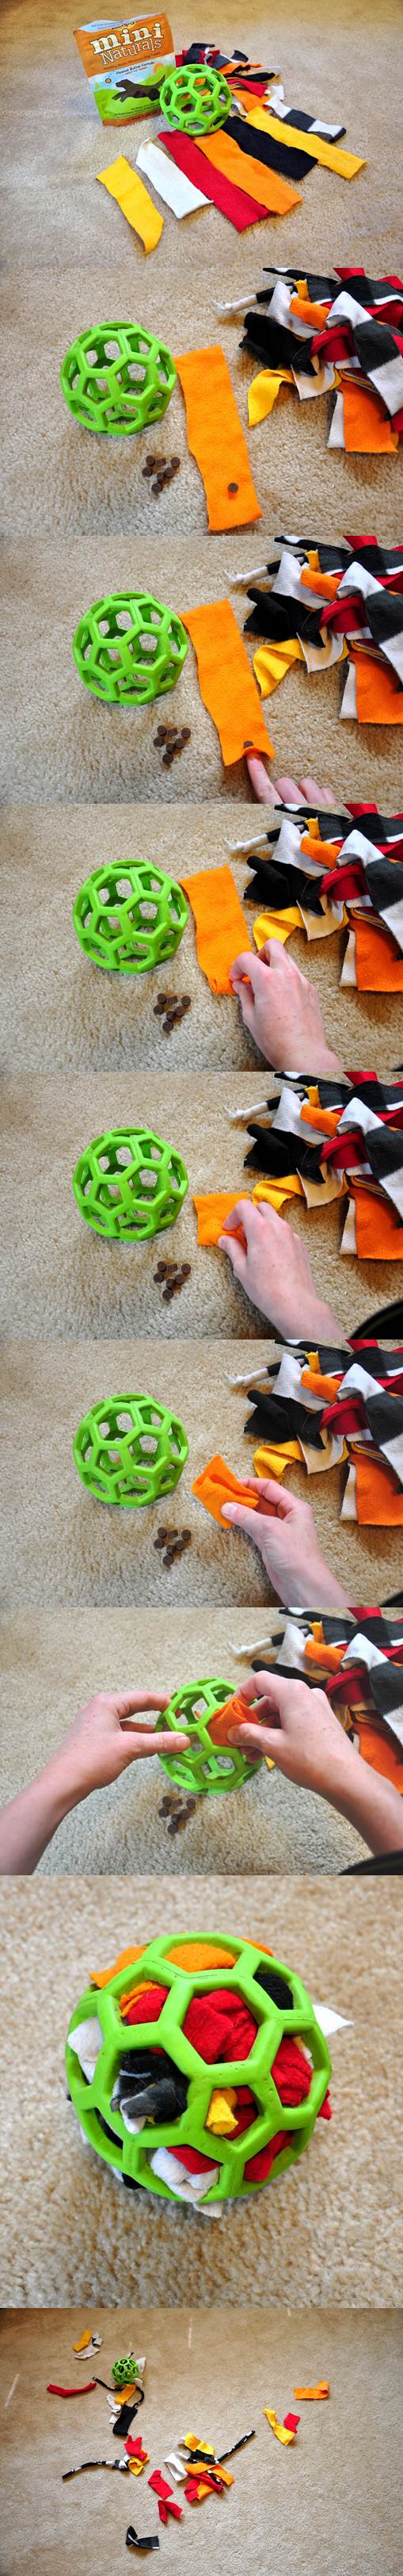 DIY Stuffed Ball Dog Toy 2